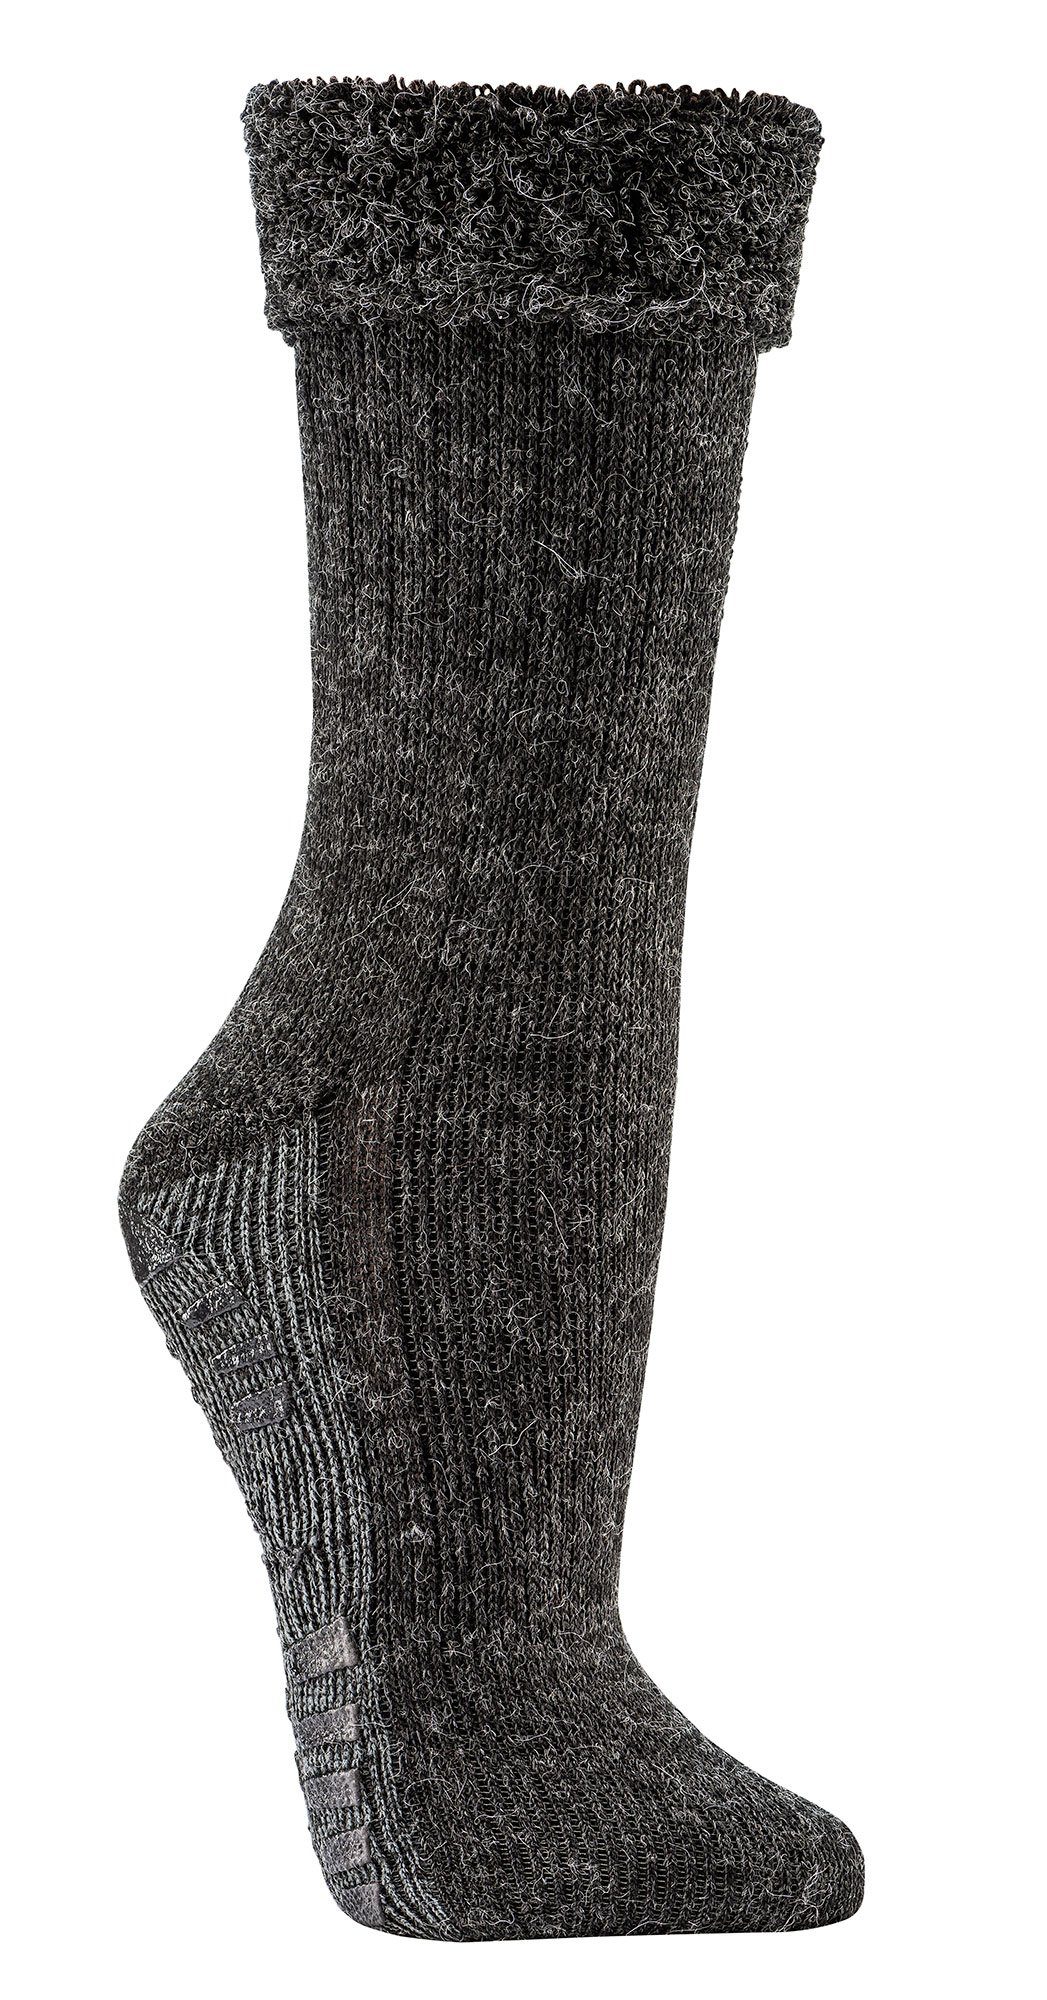 Wowerat ABS-Socken (2 der Homesocks Sohle auf Wolle anthrazit Druck mit Alpaka flauschig gefüttert mit Bettsocken Paar) ABS extra